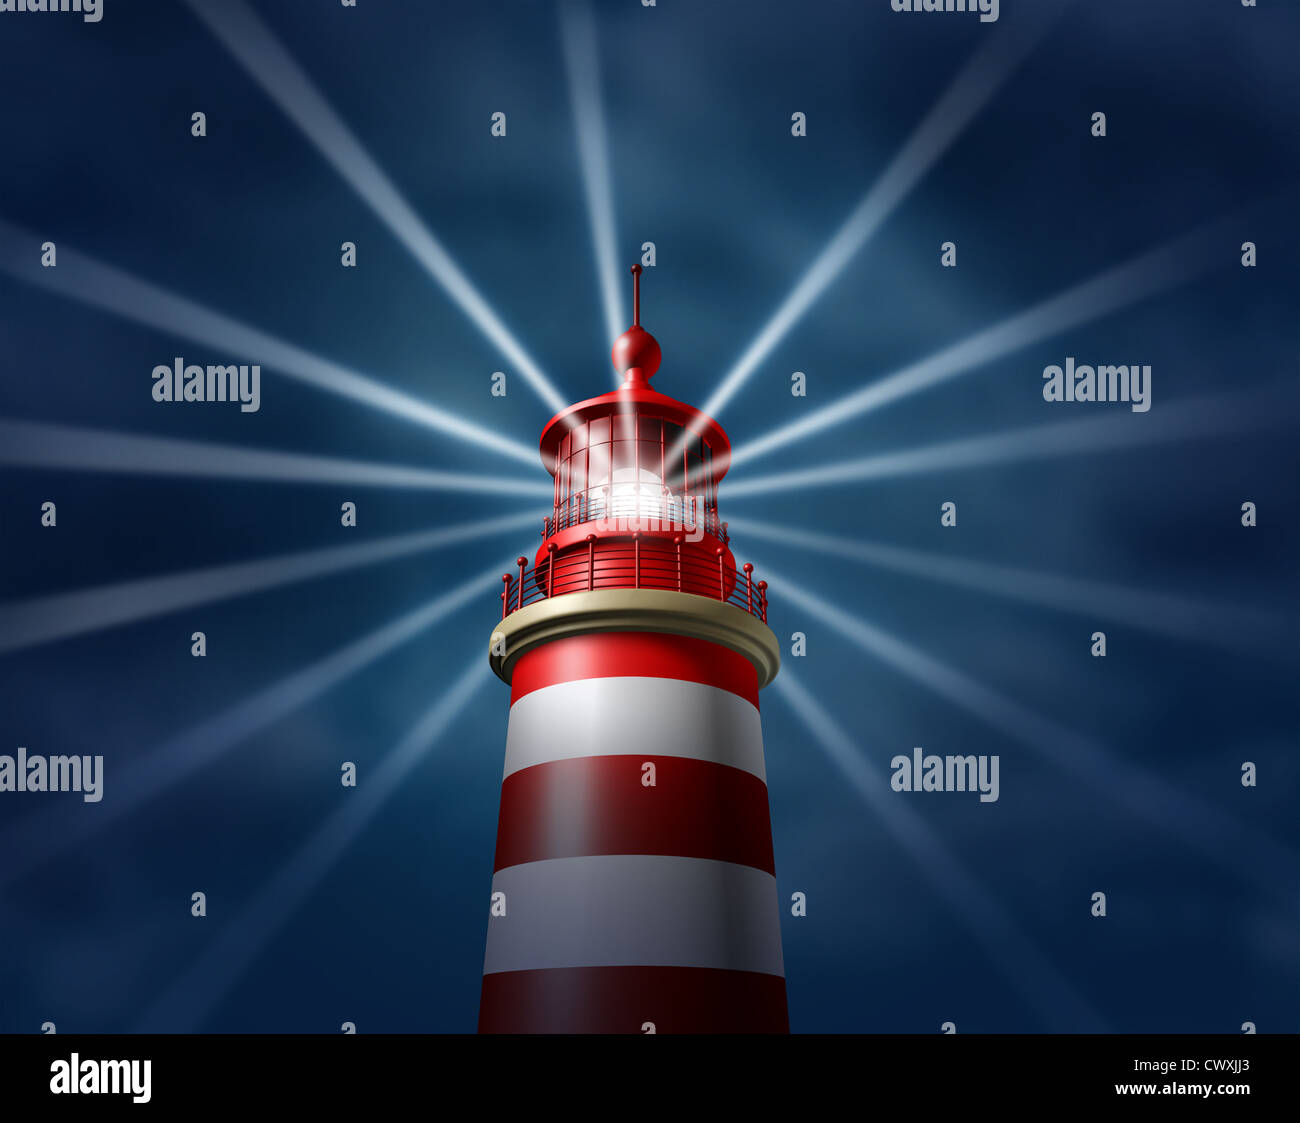 Suche nach Antworten und Business-Lösungen durch die Suche in alle Richtungen, Licht auf neue Wege zu Chancen und Erfolg mit einem Leuchtturm-Suchscheinwerfer-Symbol auf einem erleuchten den Nachthimmel. Stockfoto